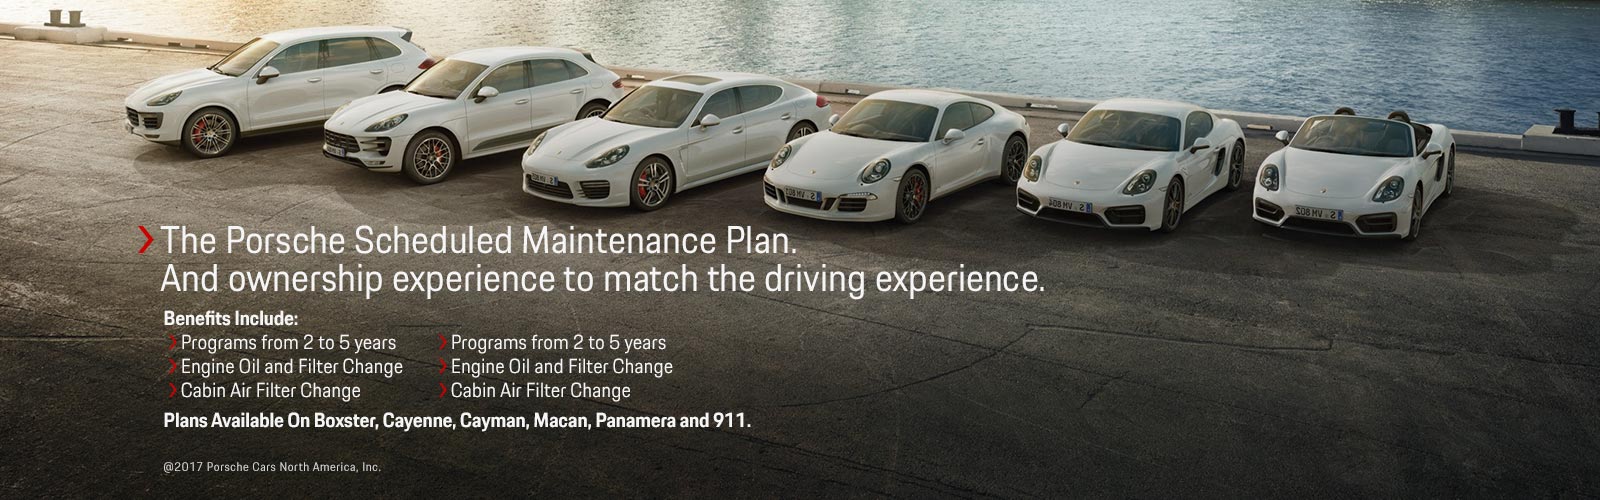 The Porsche Scheduled Maintenance Plan